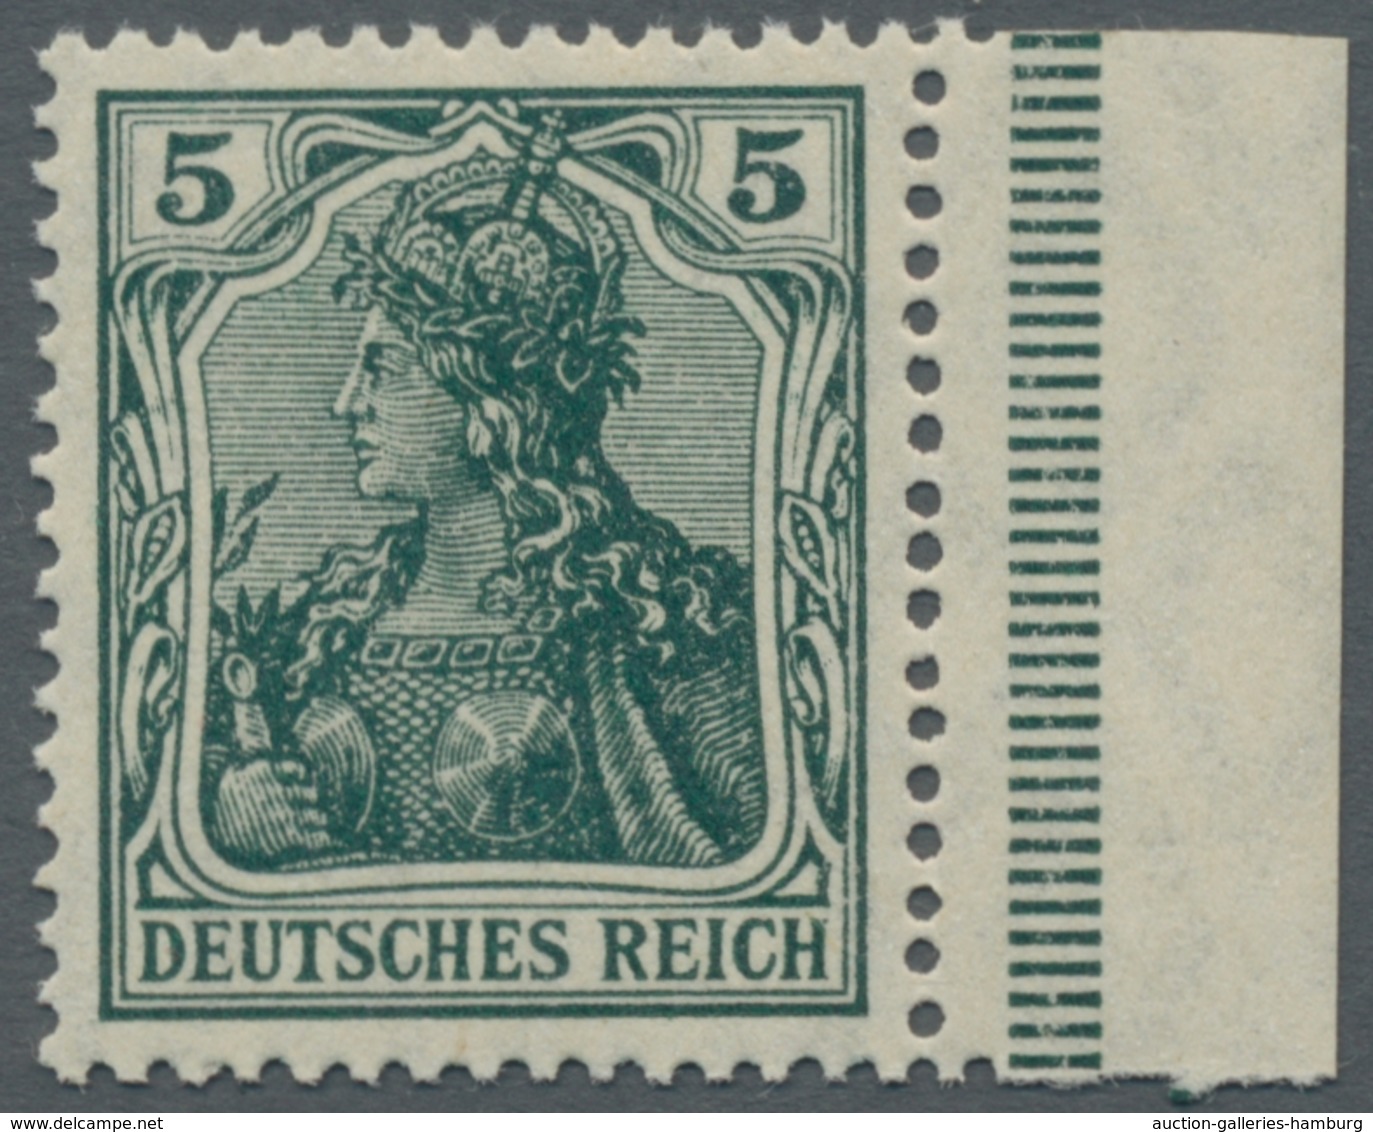 Deutsches Reich - Germania: 1900-1918, bessere postfrische und ungebrauchte Partie der Germania-Ausg